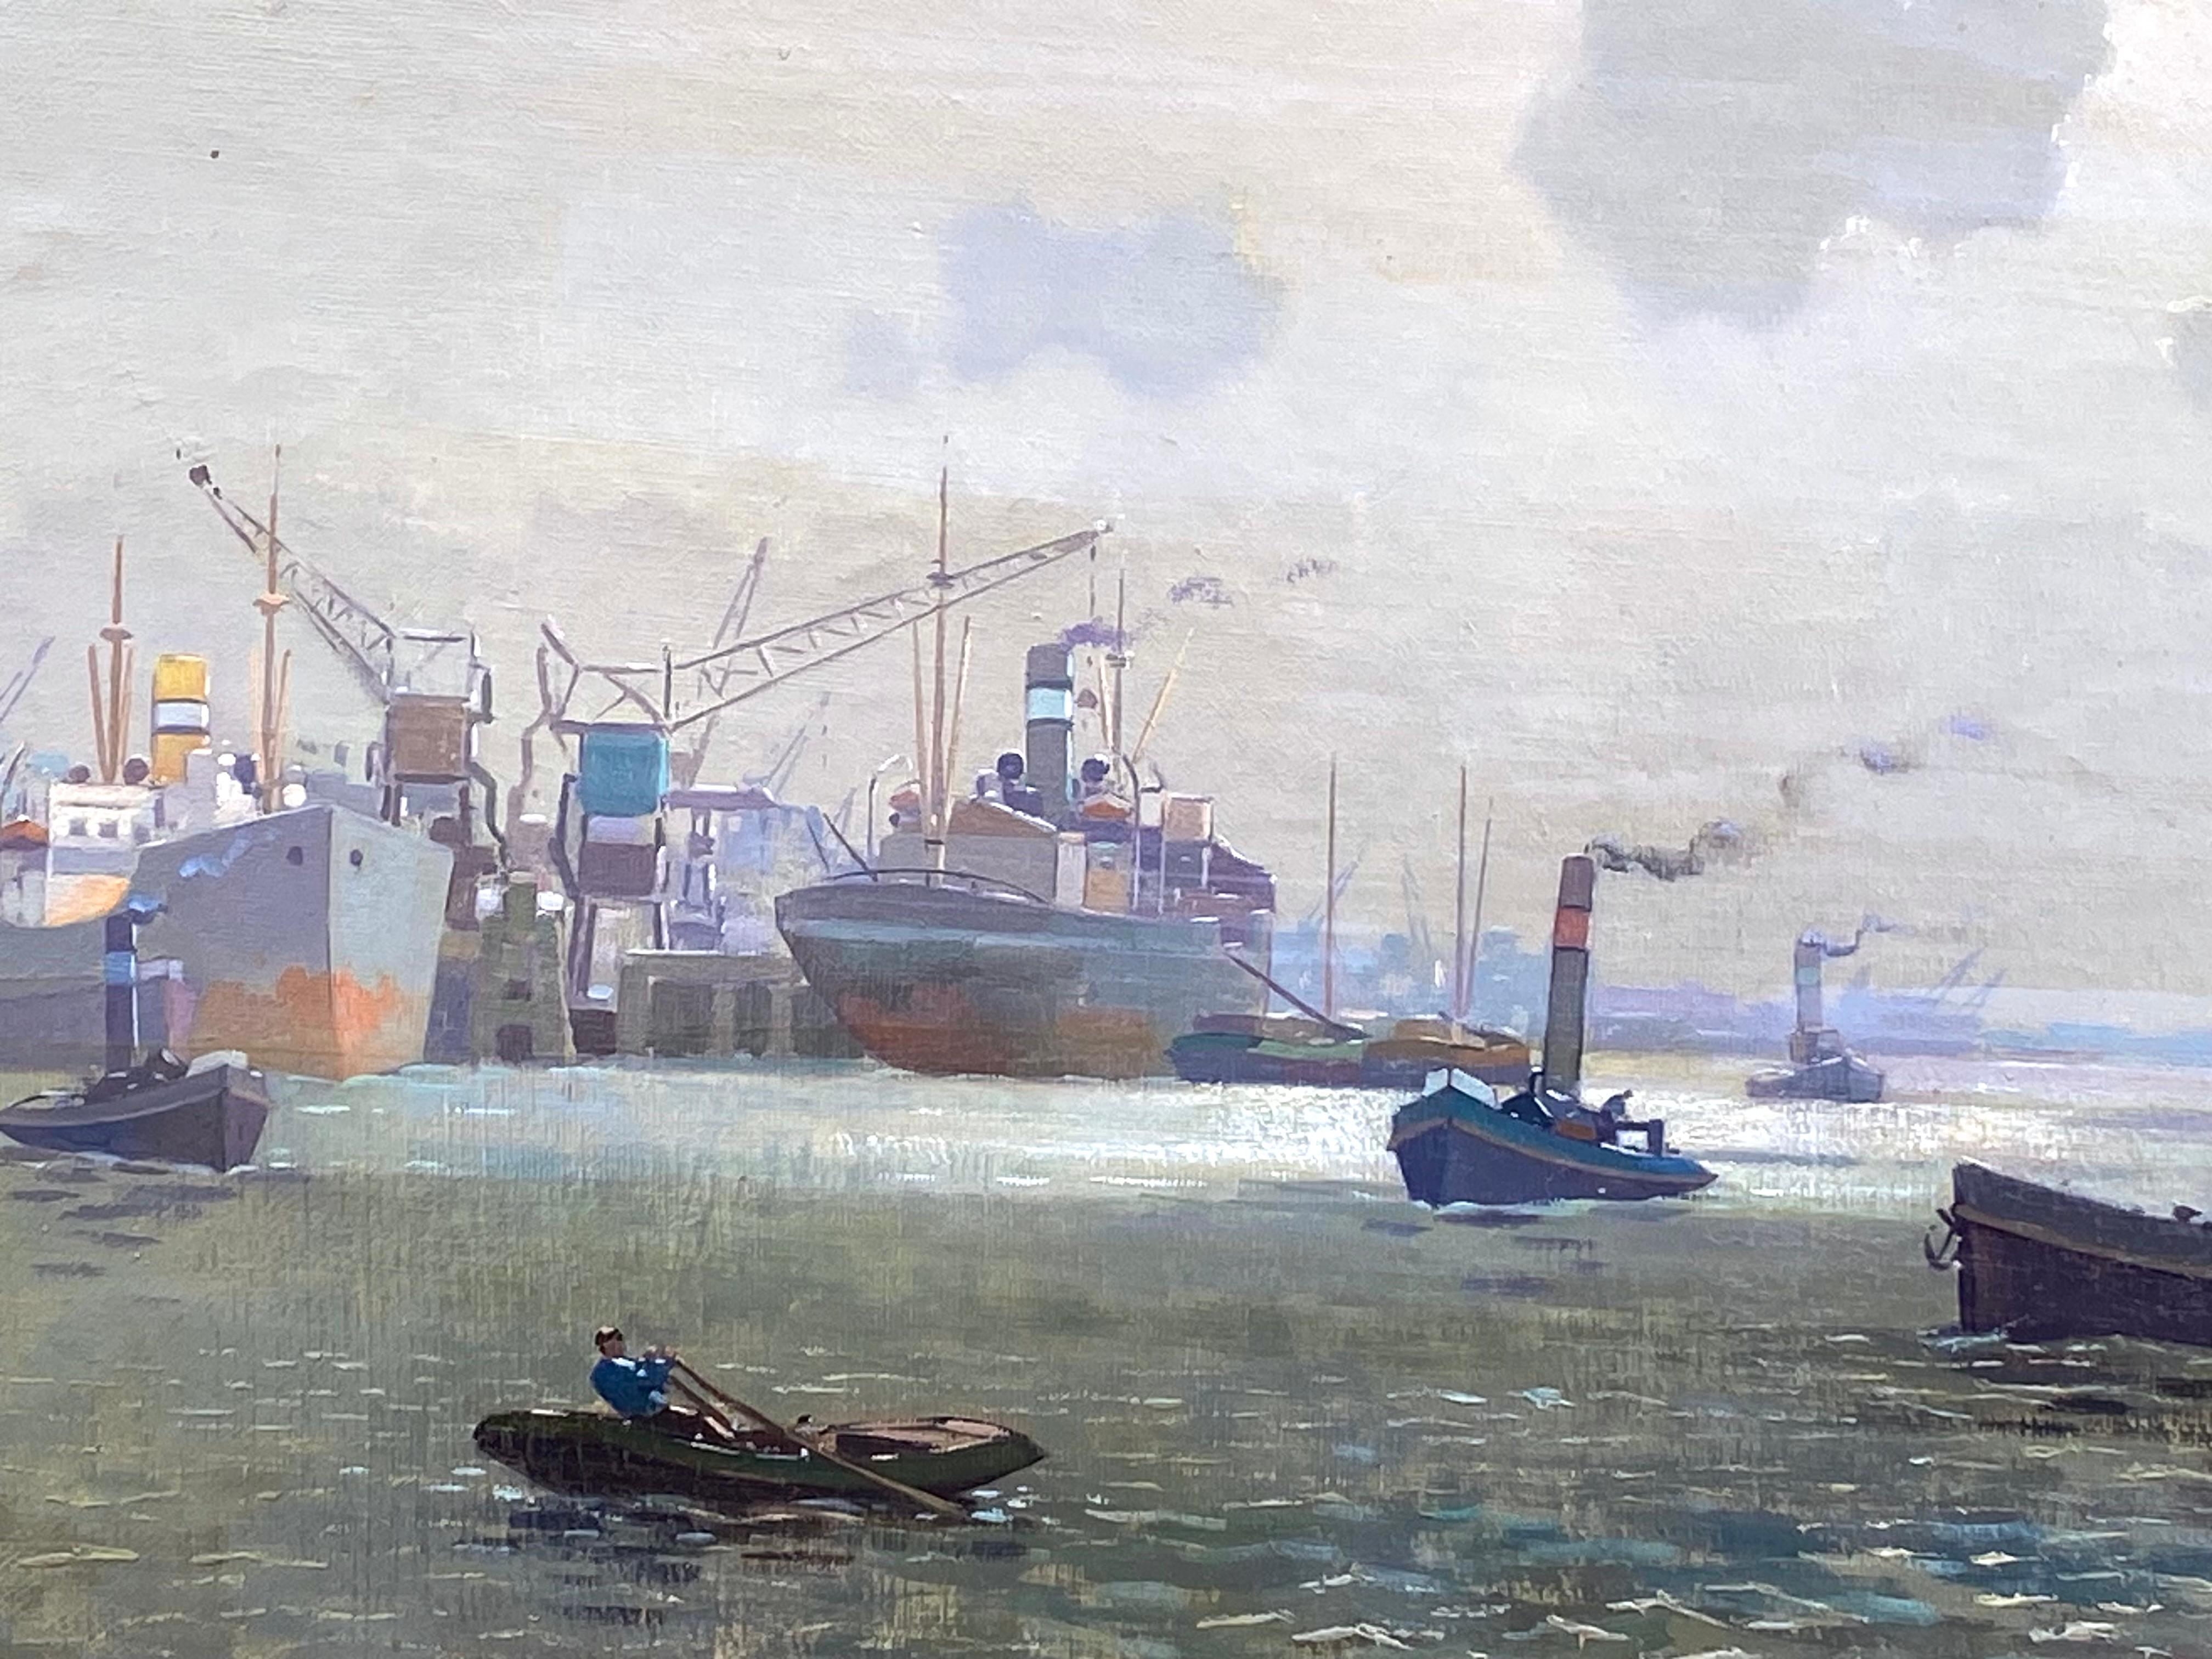 

Cette magnifique peinture de port de mer est l'œuvre de Jan Simon JR. (Néerlandais, 1911-1990). Knikker était un peintre prolifique de l'école de La Haye. À en juger par le sujet et l'âge de la toile, cette magnifique représentation d'un port